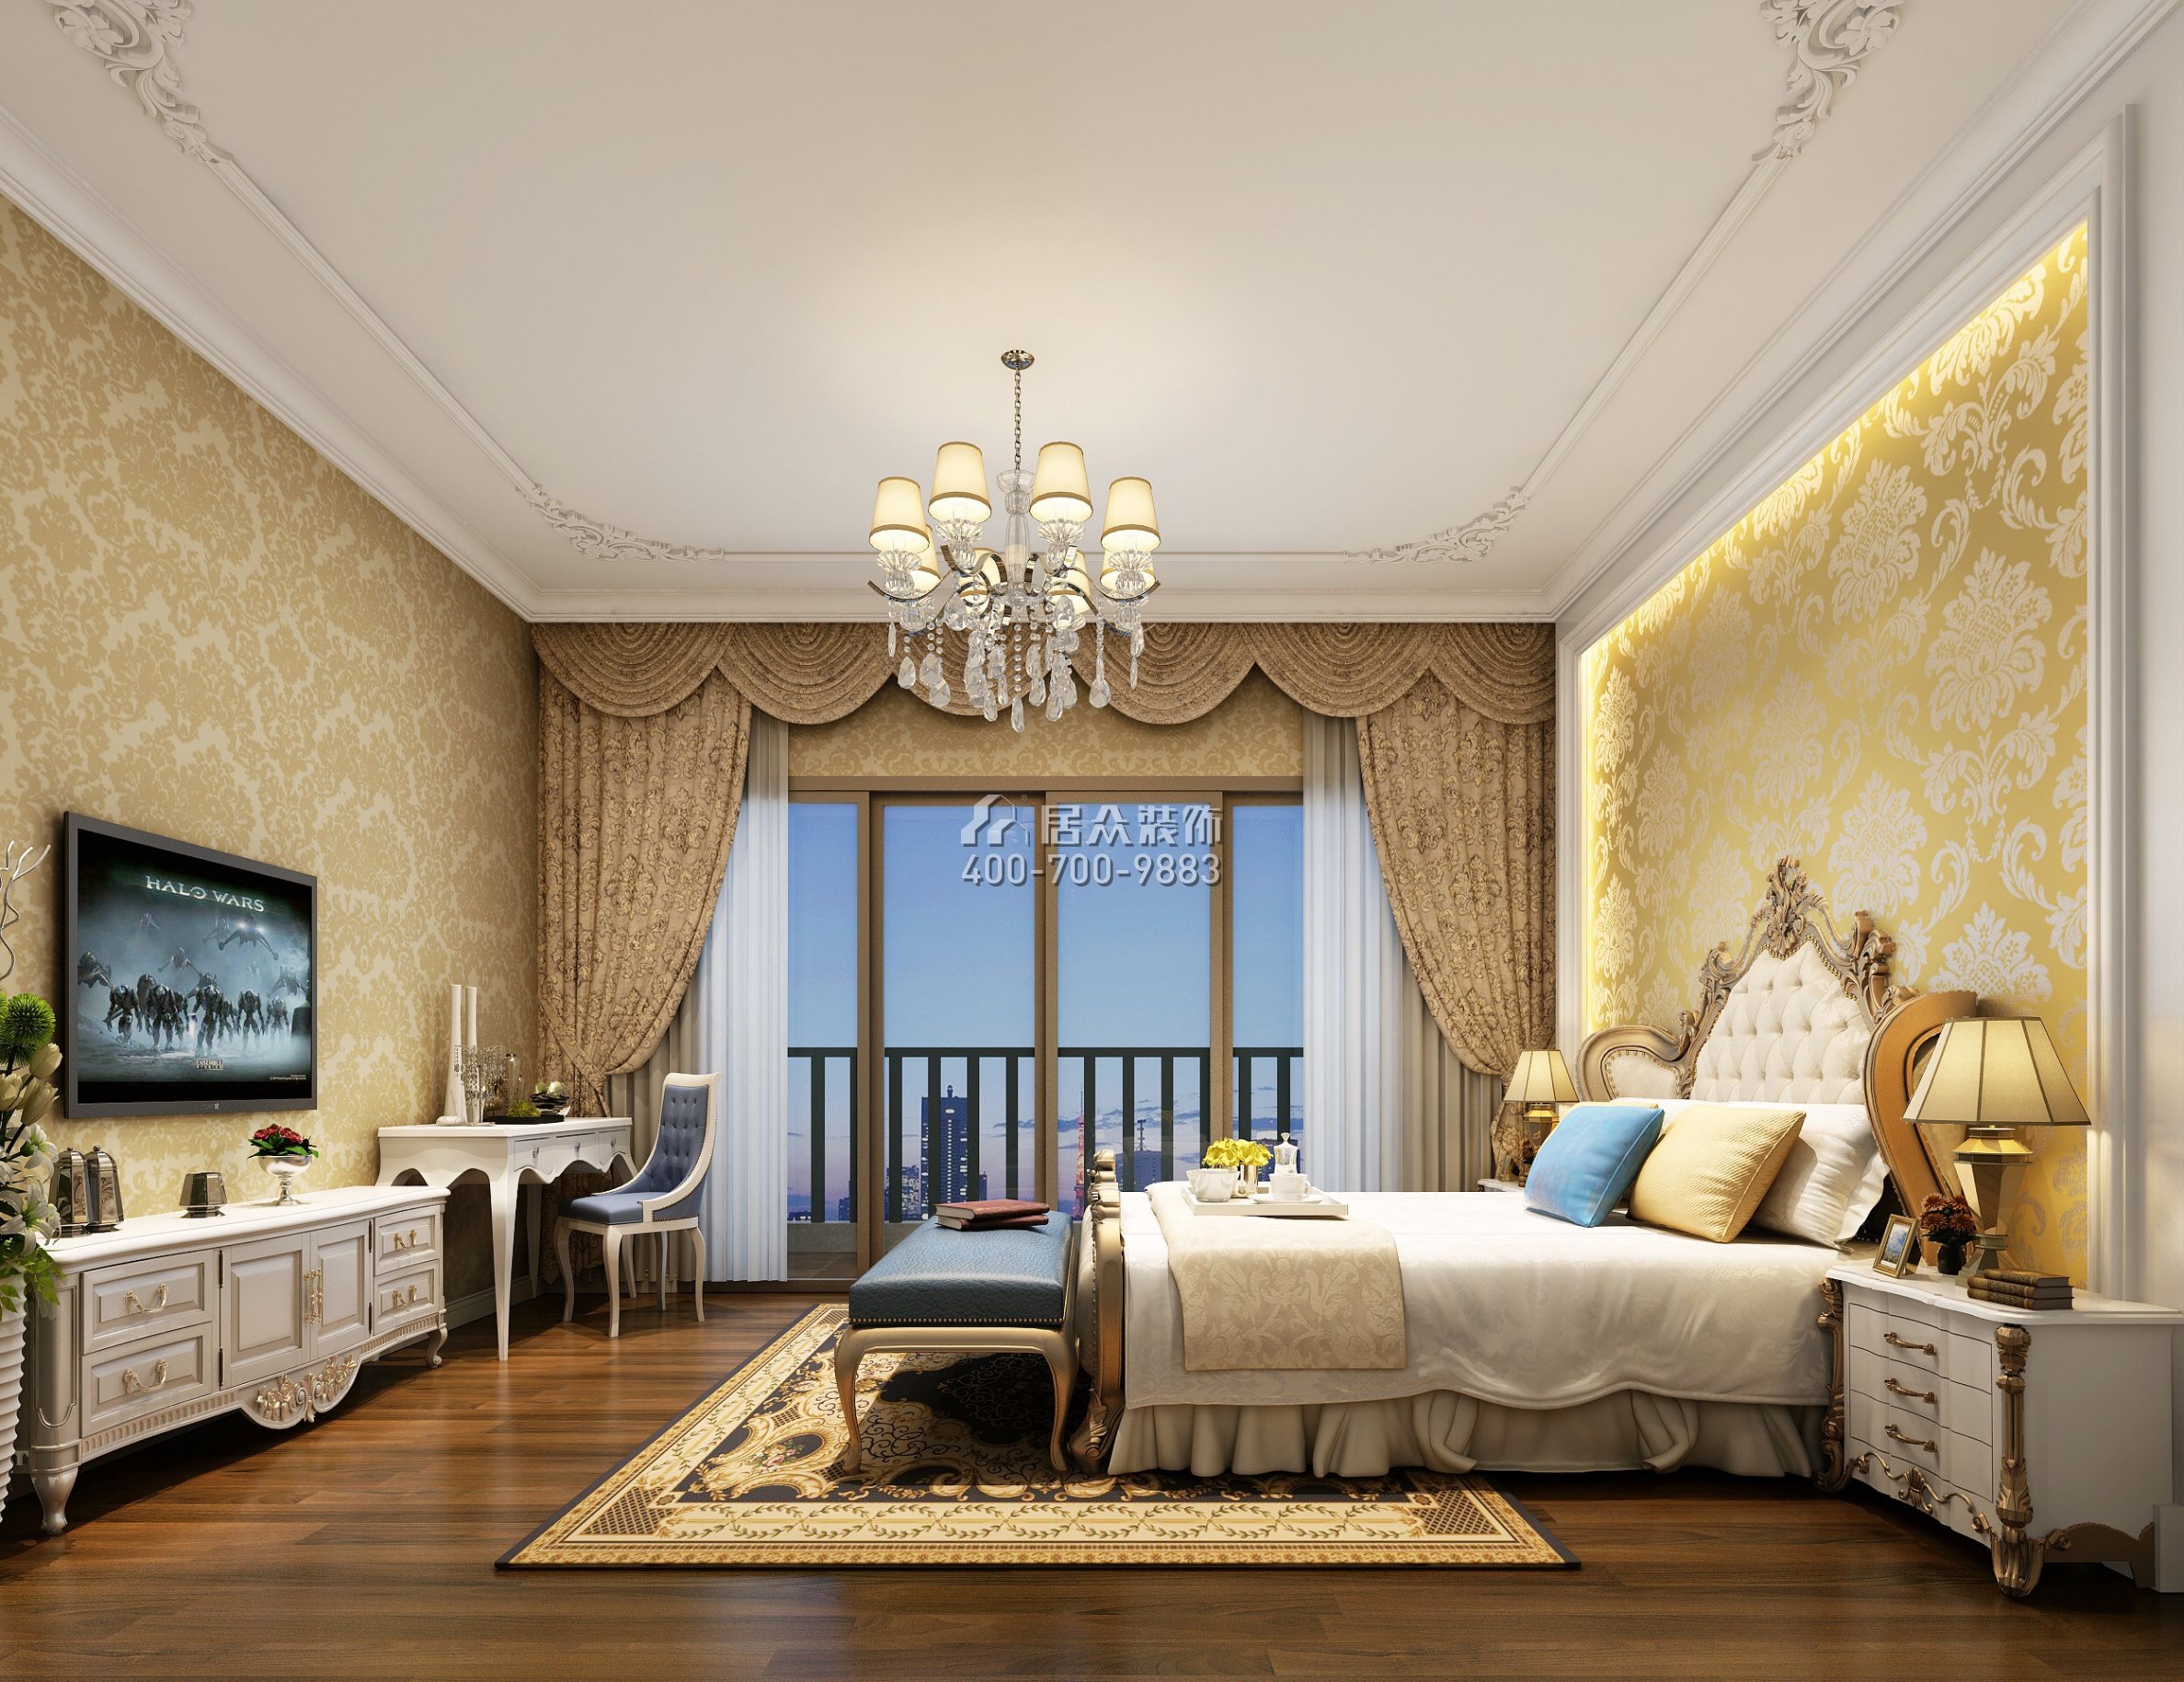 海逸豪庭126平方米欧式风格复式户型卧室装修效果图